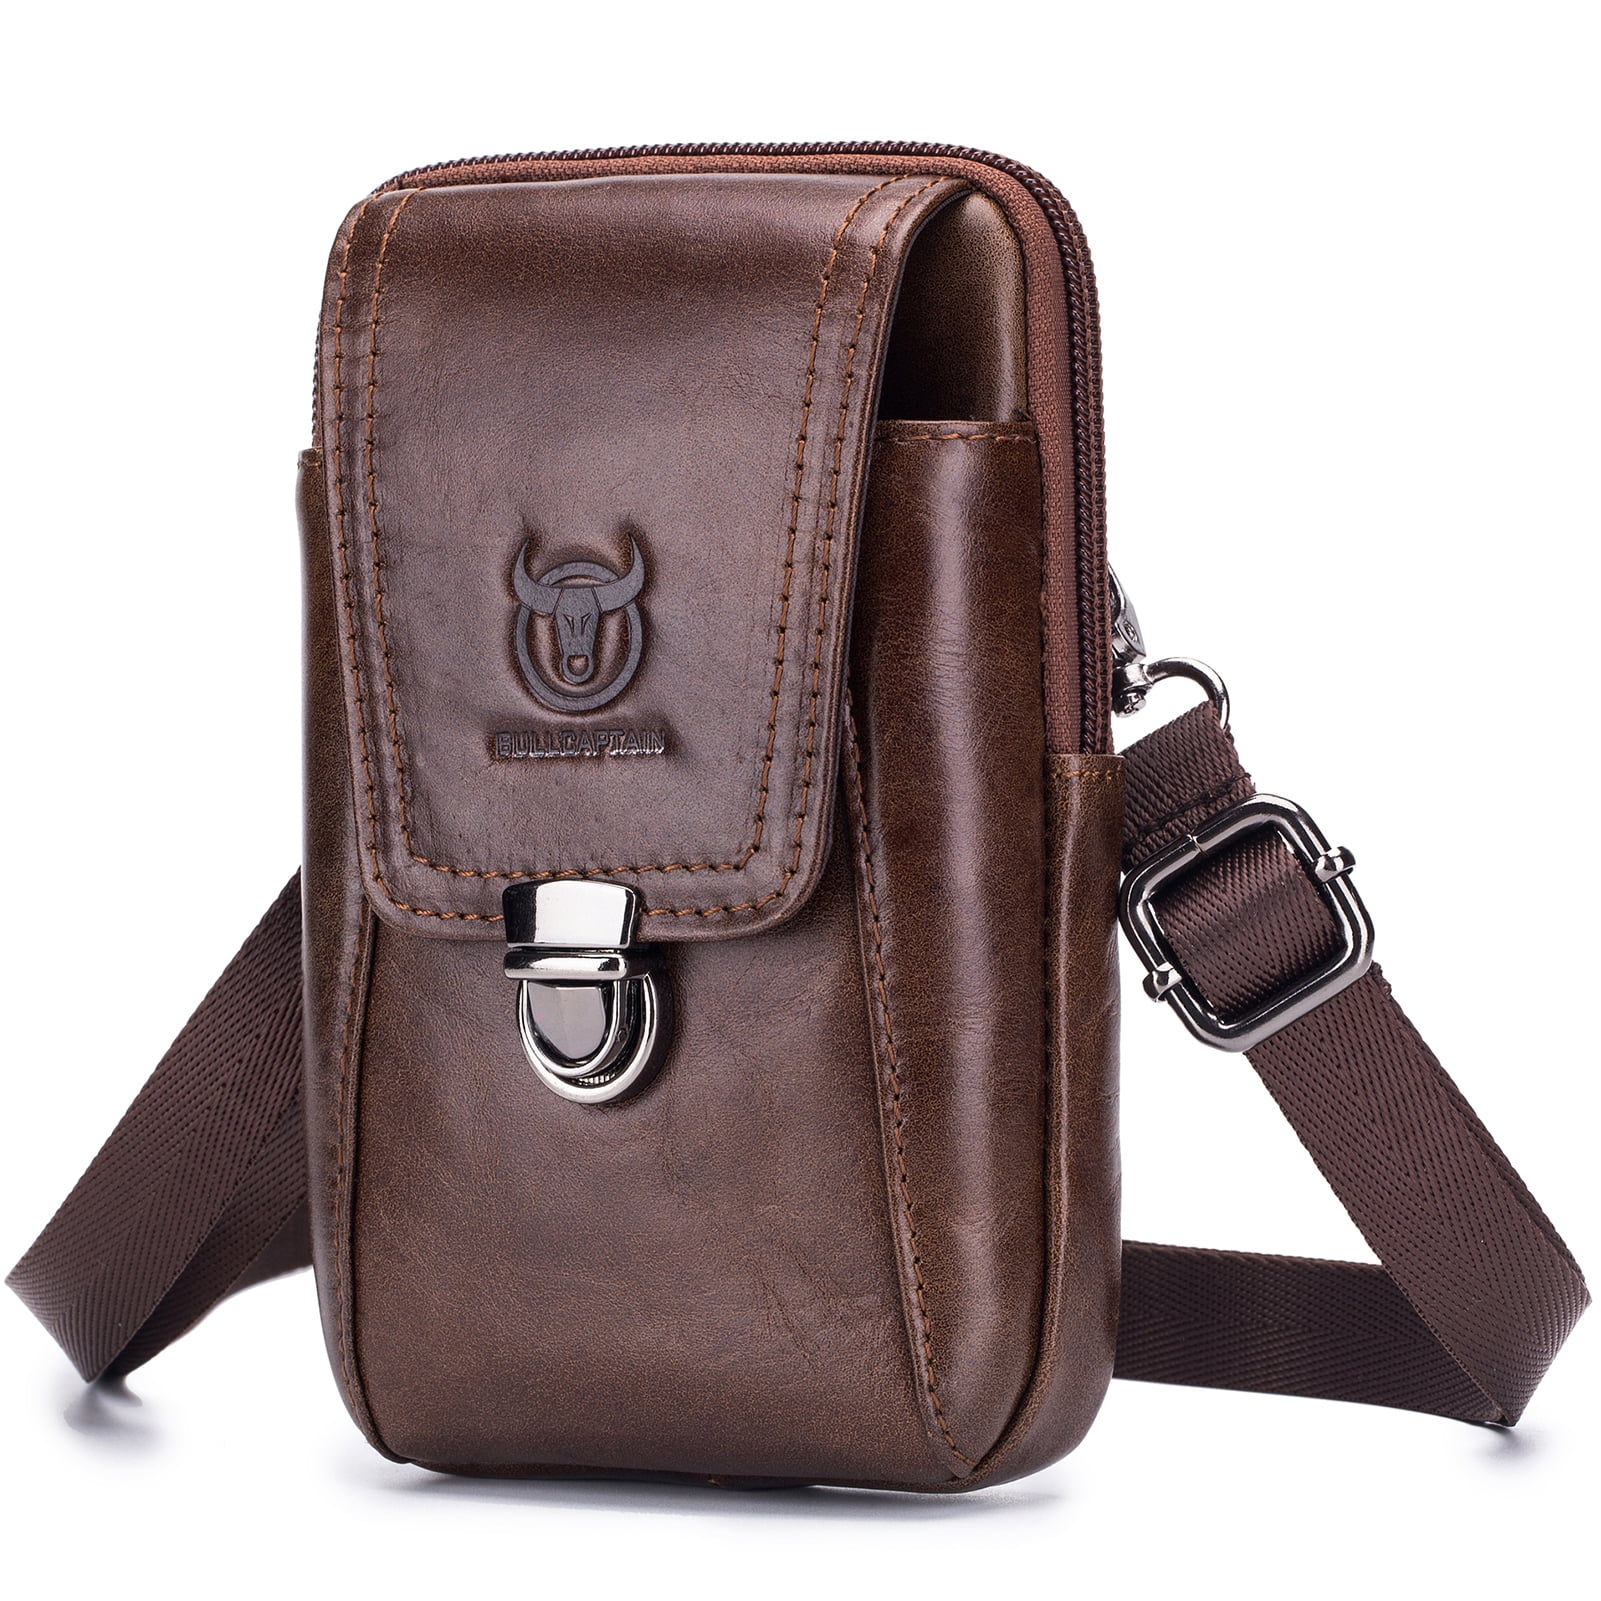 Men Leather Bag Phone Pouch Bag Travel Crossbody Shoulder Bag Pack